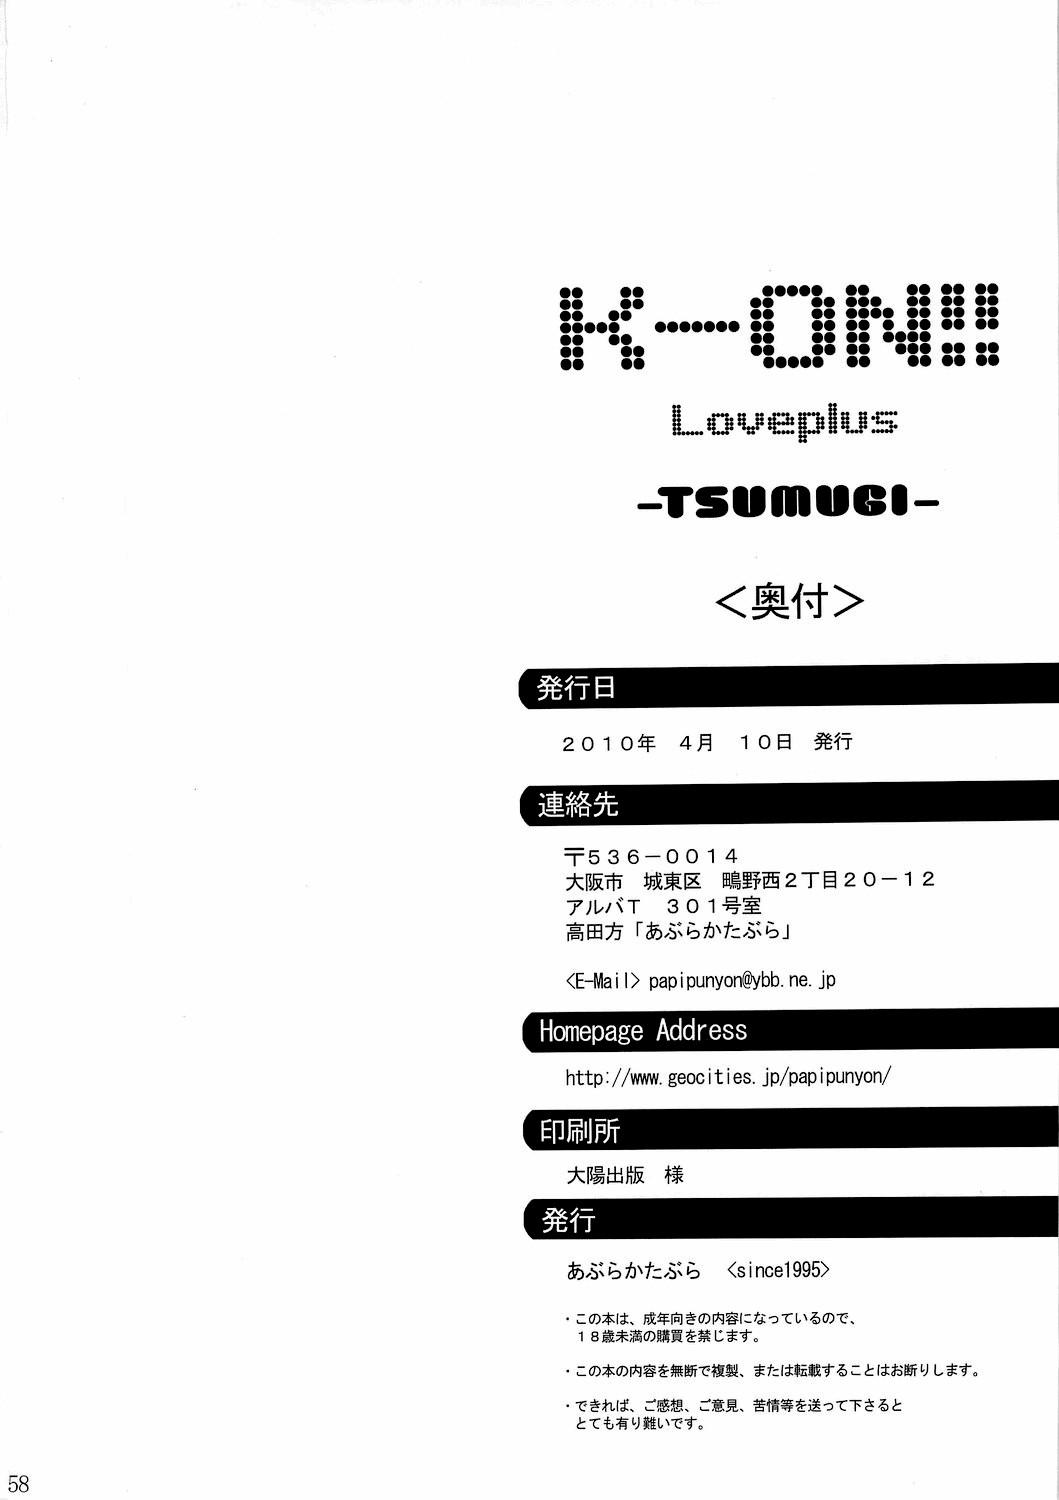 Anal [Abura Katabura (Papipunyon)] K-ON!! Loveplus-TSUMUGI- (K-ON!) - K on Latinos - Page 58